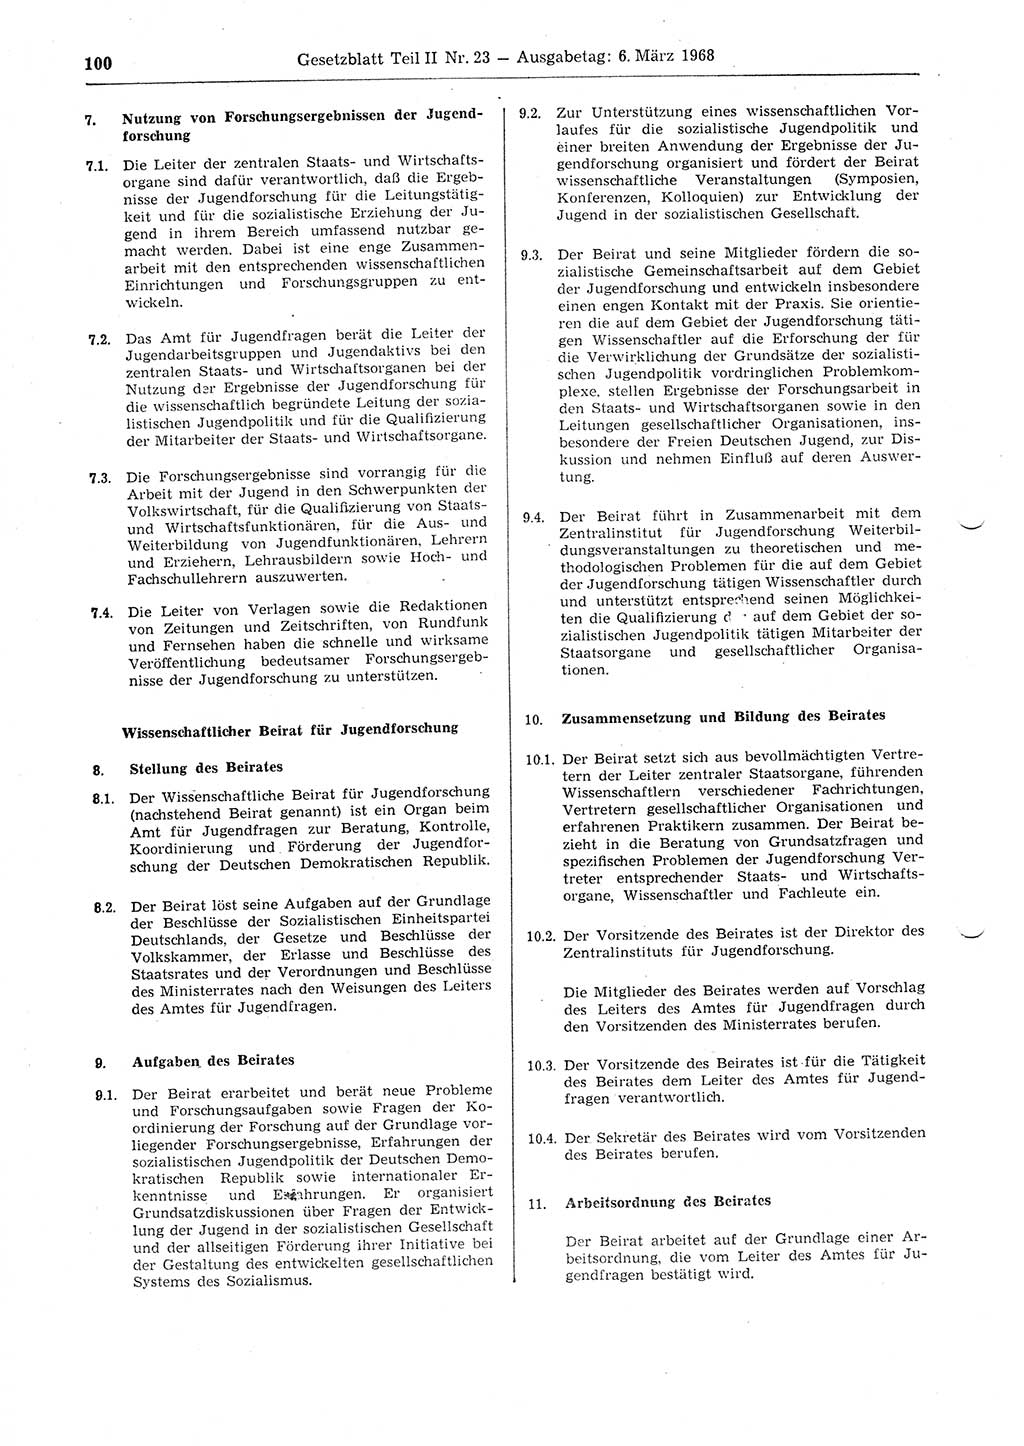 Gesetzblatt (GBl.) der Deutschen Demokratischen Republik (DDR) Teil ⅠⅠ 1968, Seite 100 (GBl. DDR ⅠⅠ 1968, S. 100)